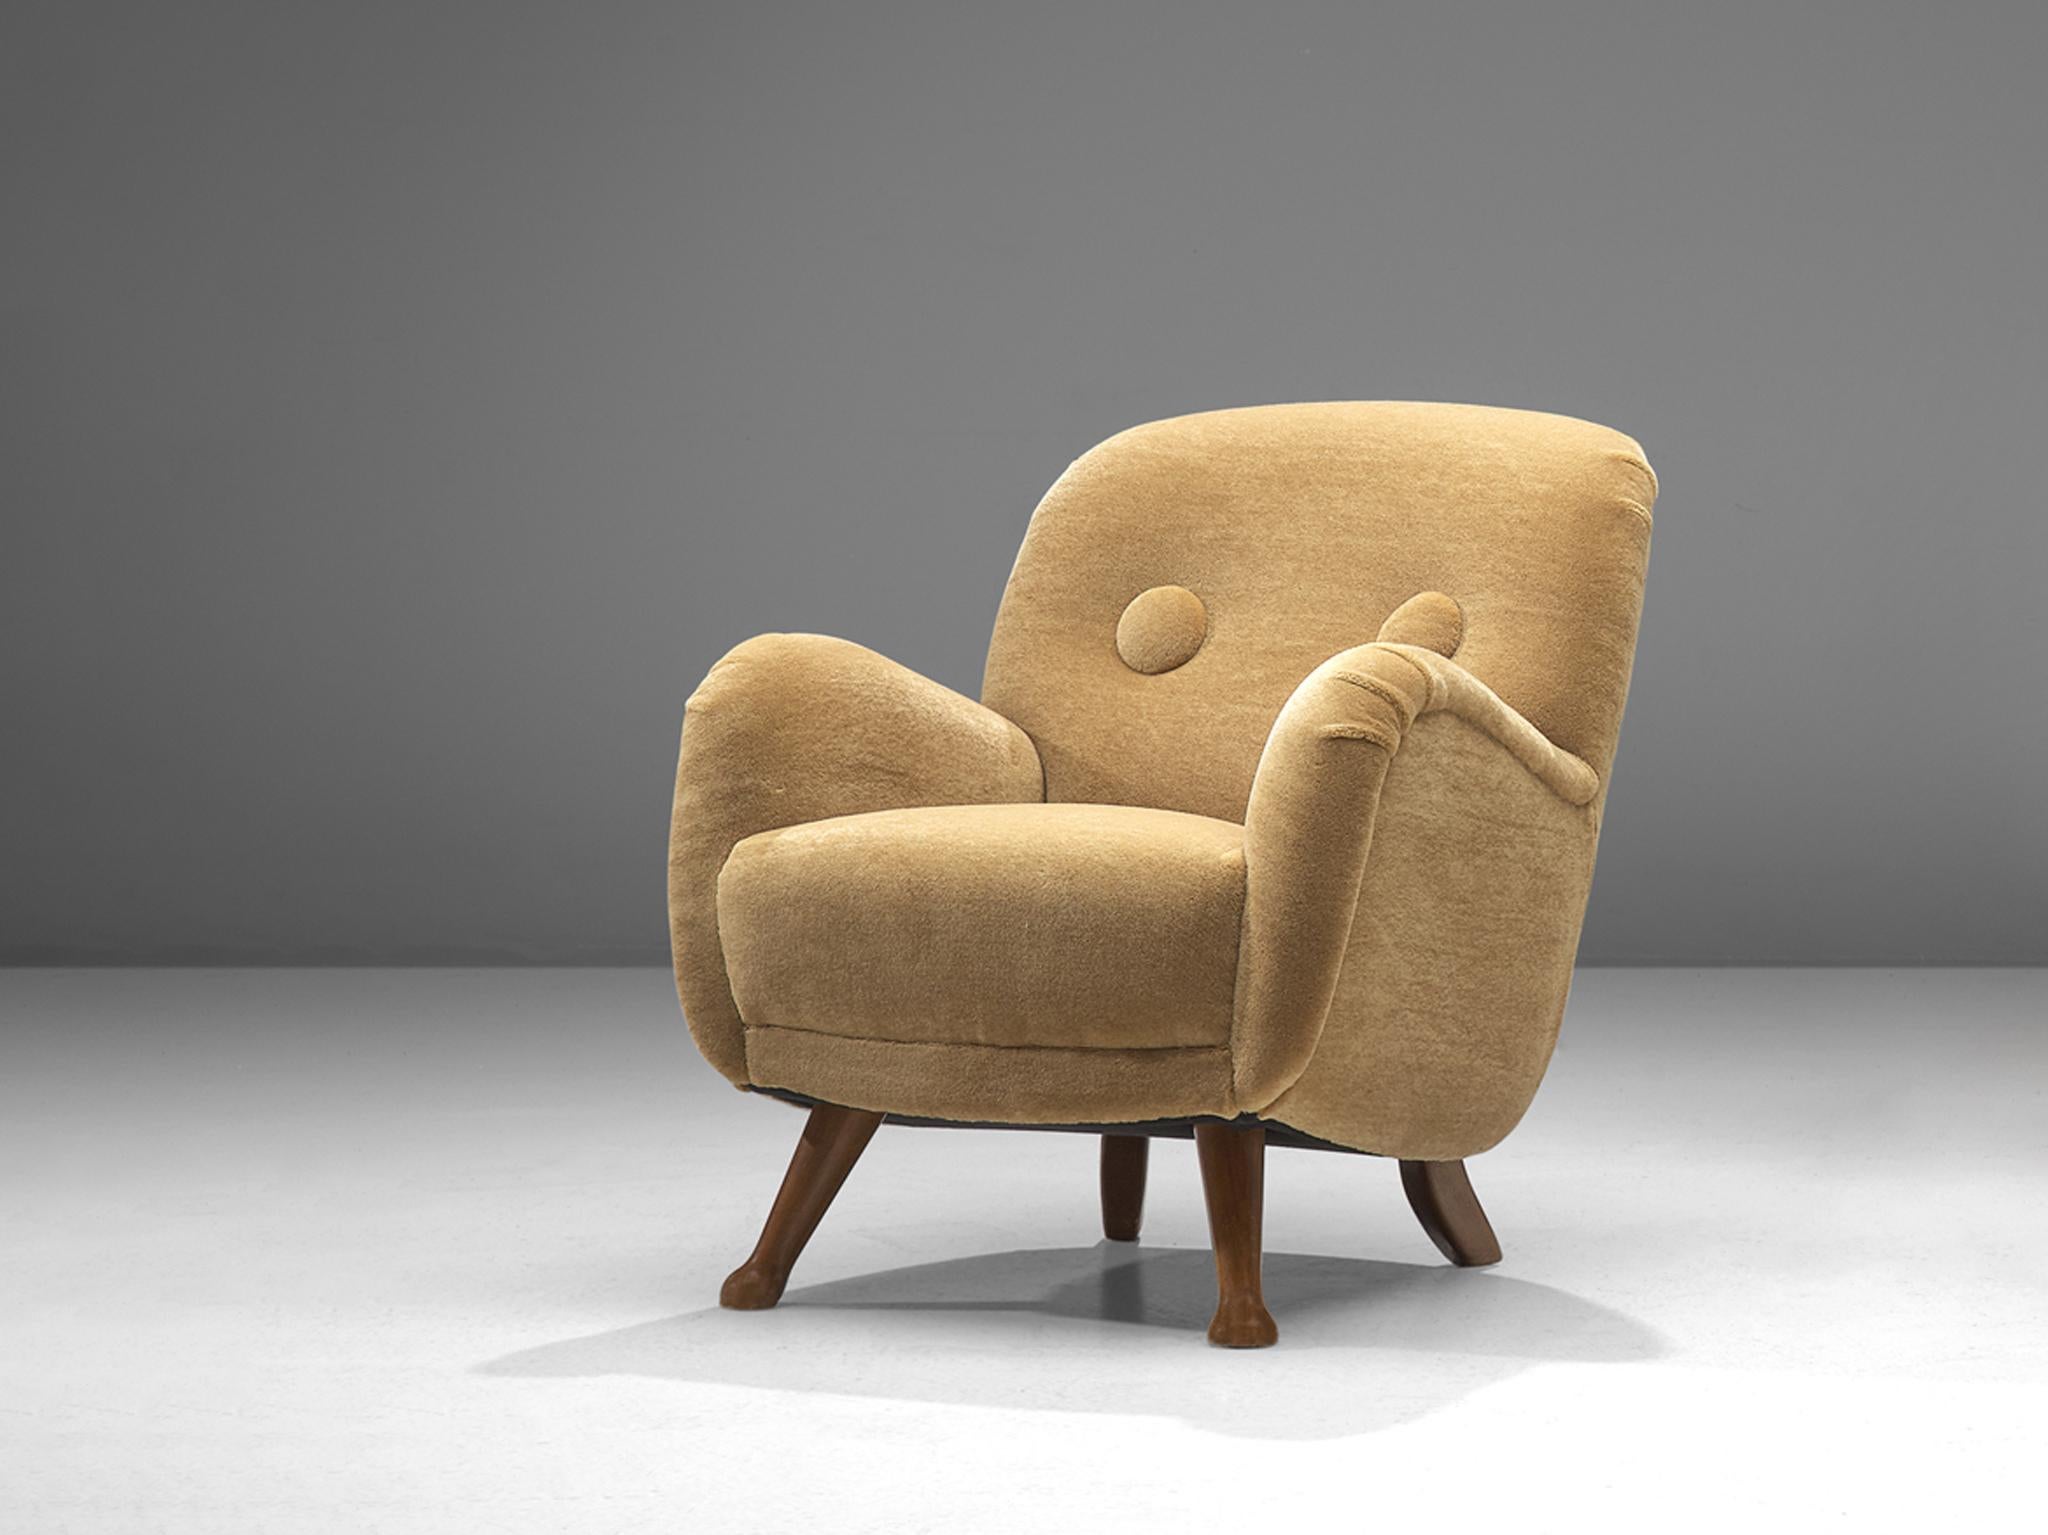 Beeche, fauteuil, tissu beige teddy, hêtre, Danemark, années 1940.

Ce fauteuil audacieux et incurvé repose sur une construction solide avec une touche de tendresse grâce à la texture douce du tissu teddy. L'ensemble de la coquille est légèrement